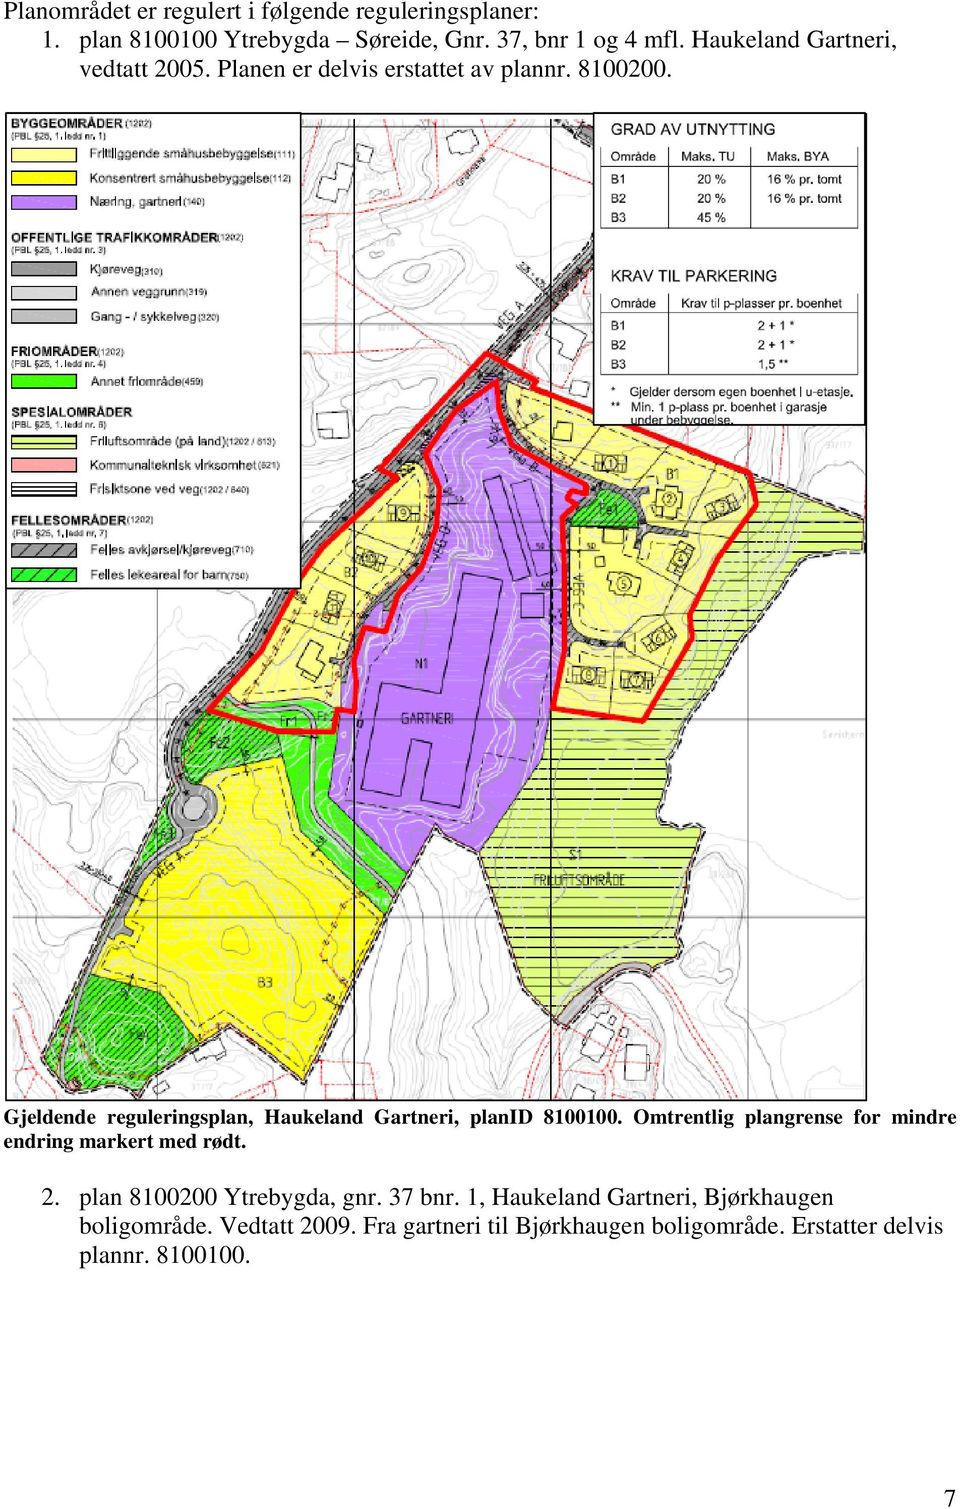 Gjeldende reguleringsplan, Haukeland Gartneri, planid 8100100. Omtrentlig plangrense for mindre endring markert med rødt. 2.